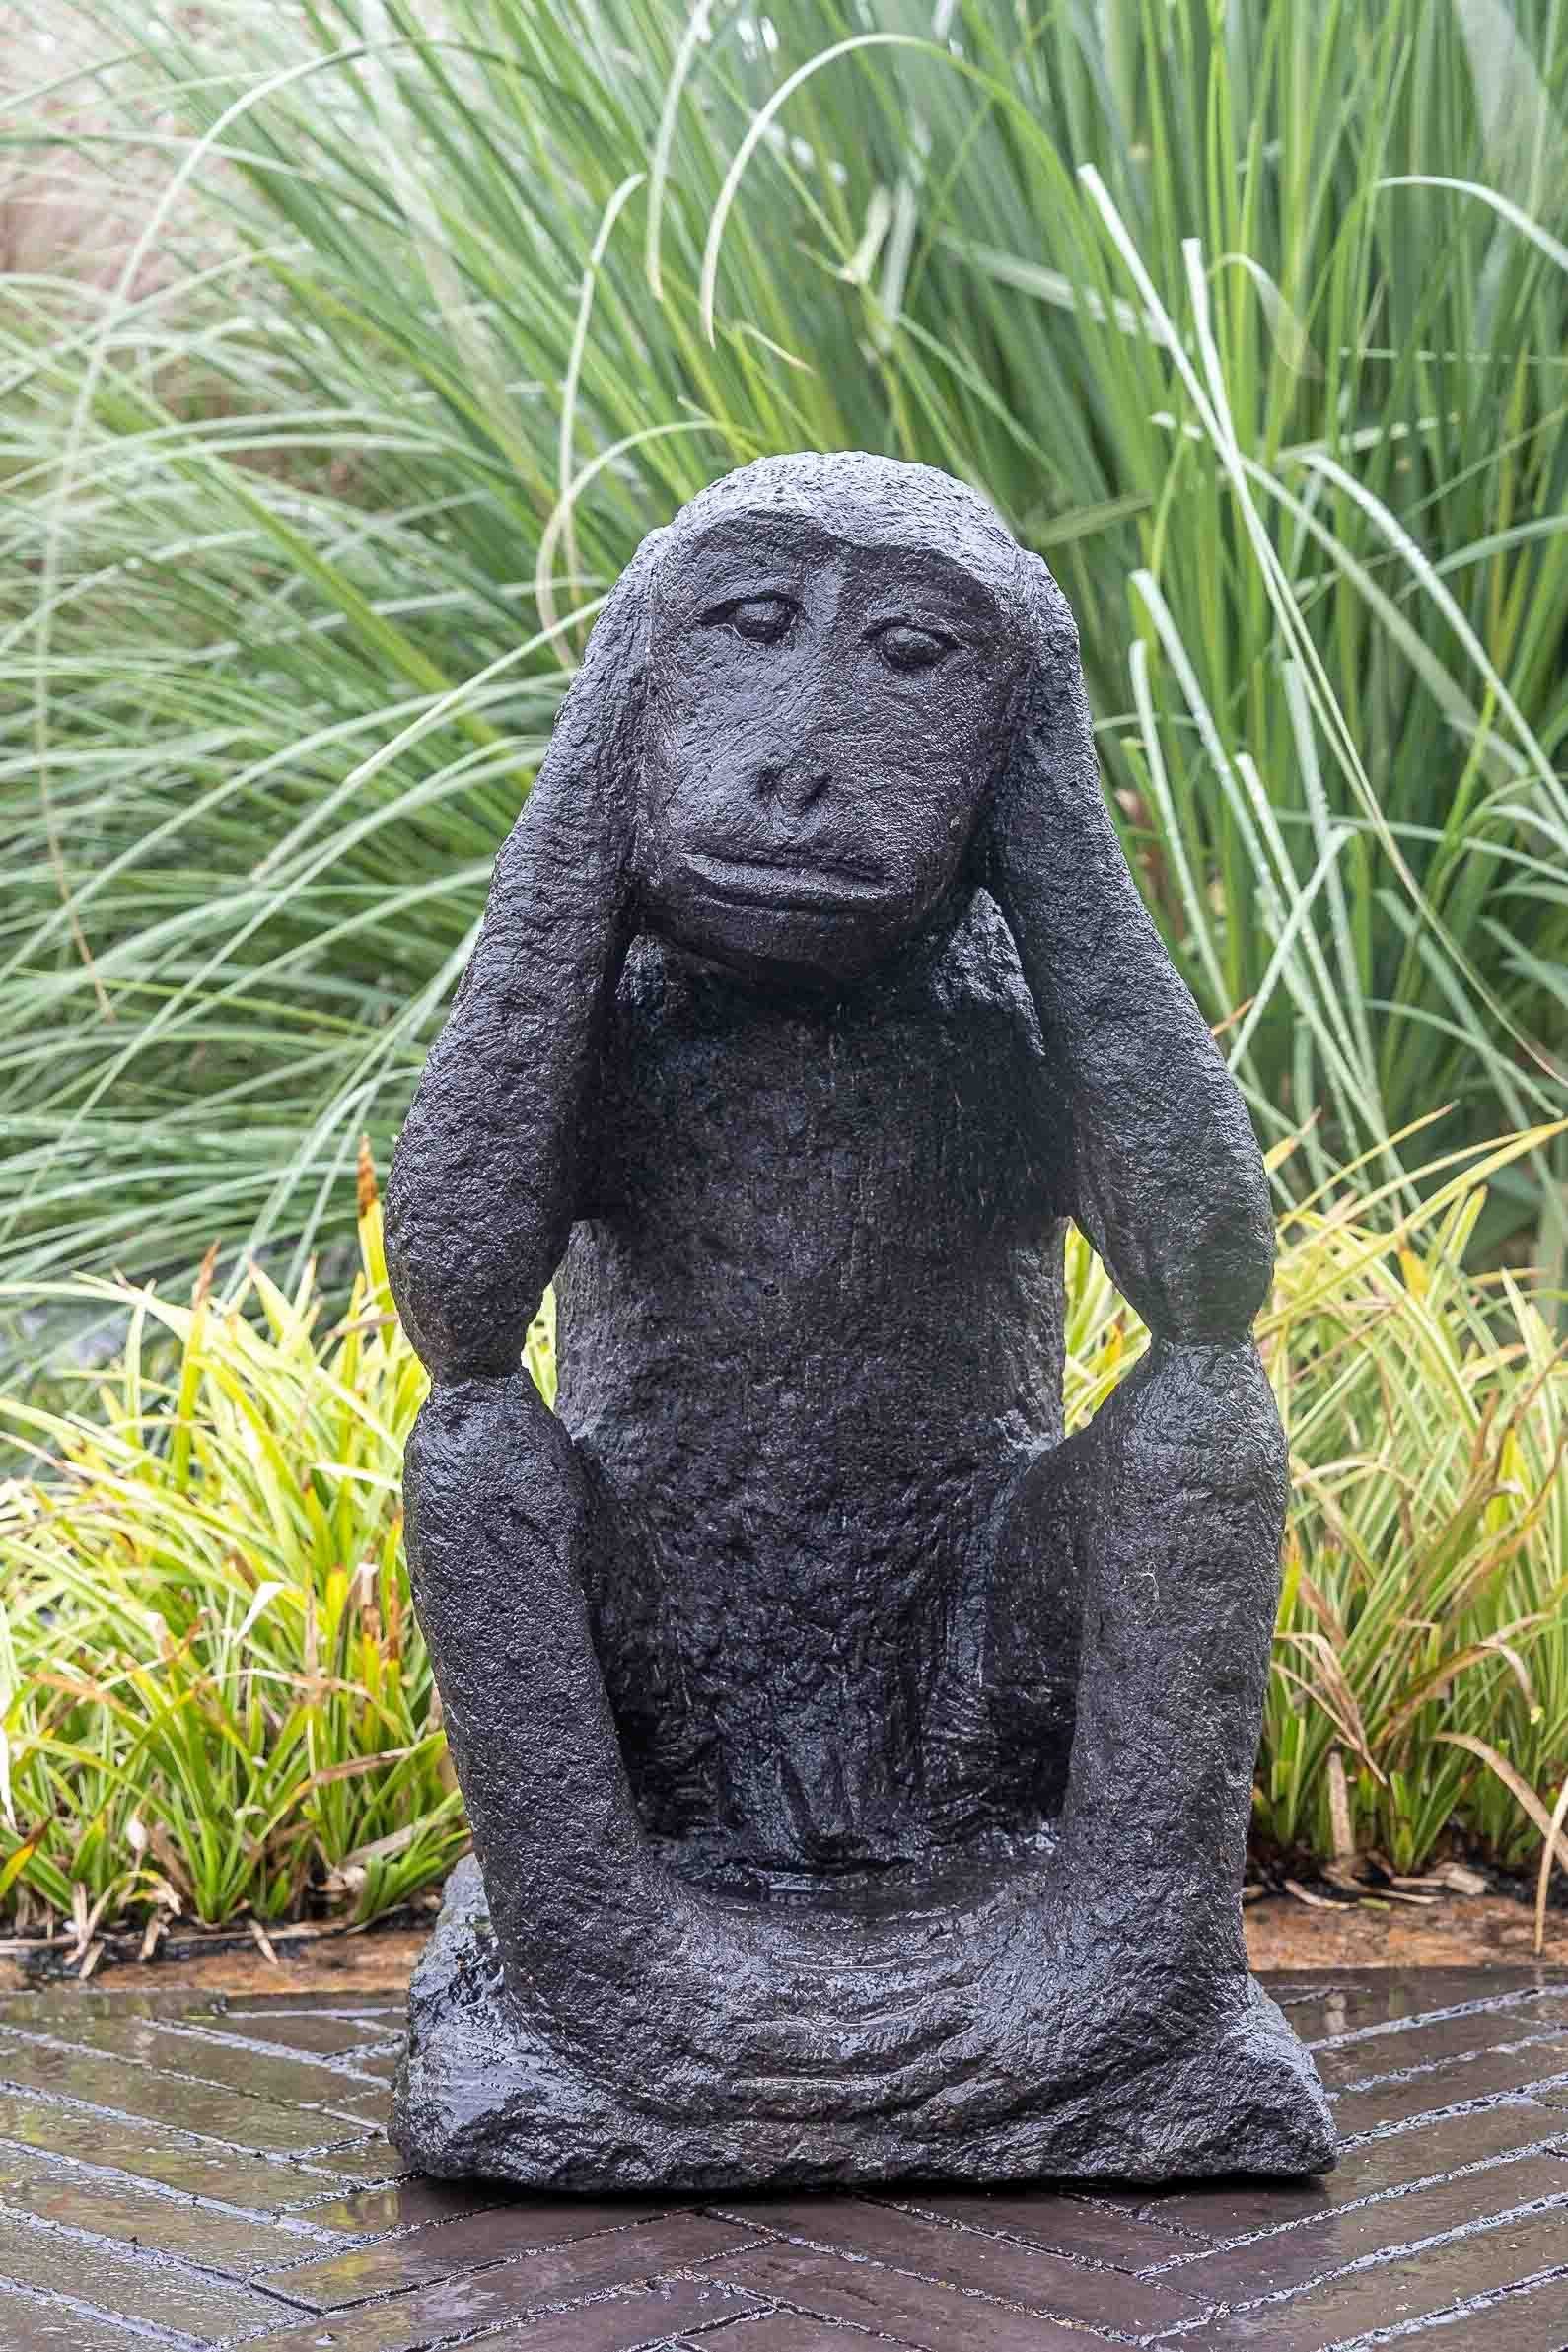 IDYL Gartenfigur IDYL Lavastein Figur Affe sitzend, Lavastein– ein Naturprodukt – sehr robust – witterungsbeständig gegen Frost, Regen und UV-Strahlung.